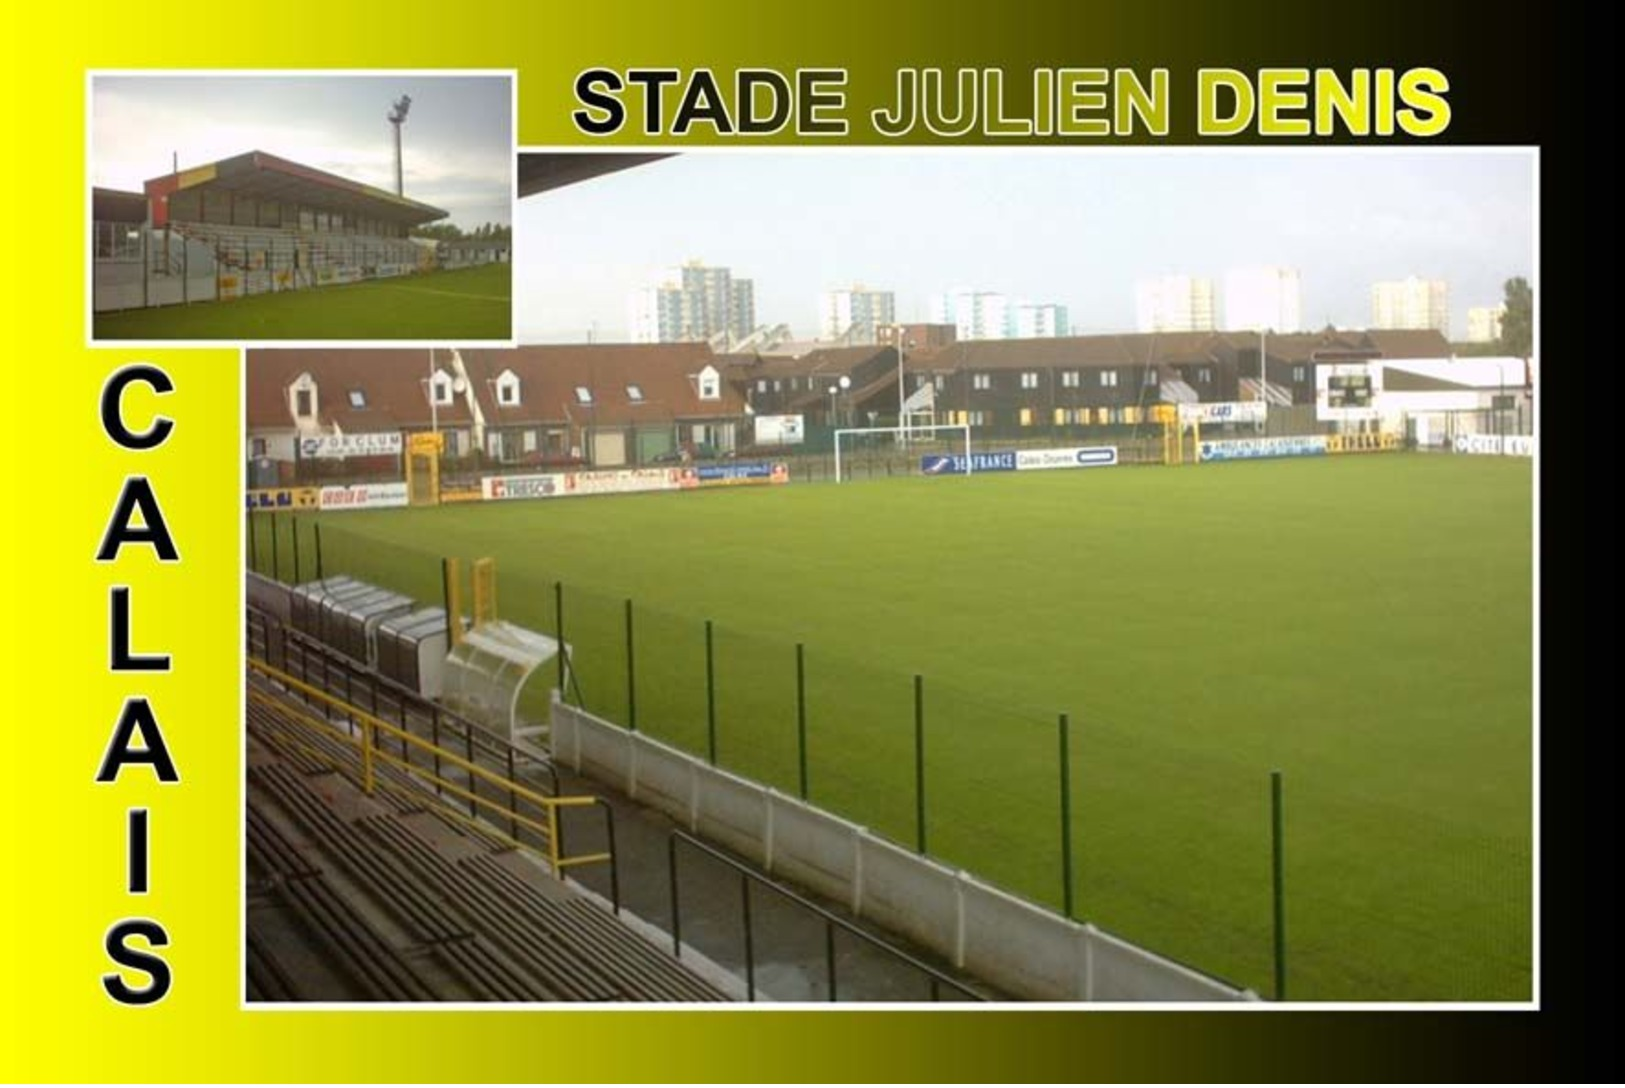 Calais (62) Stade Julien Denis - Calais